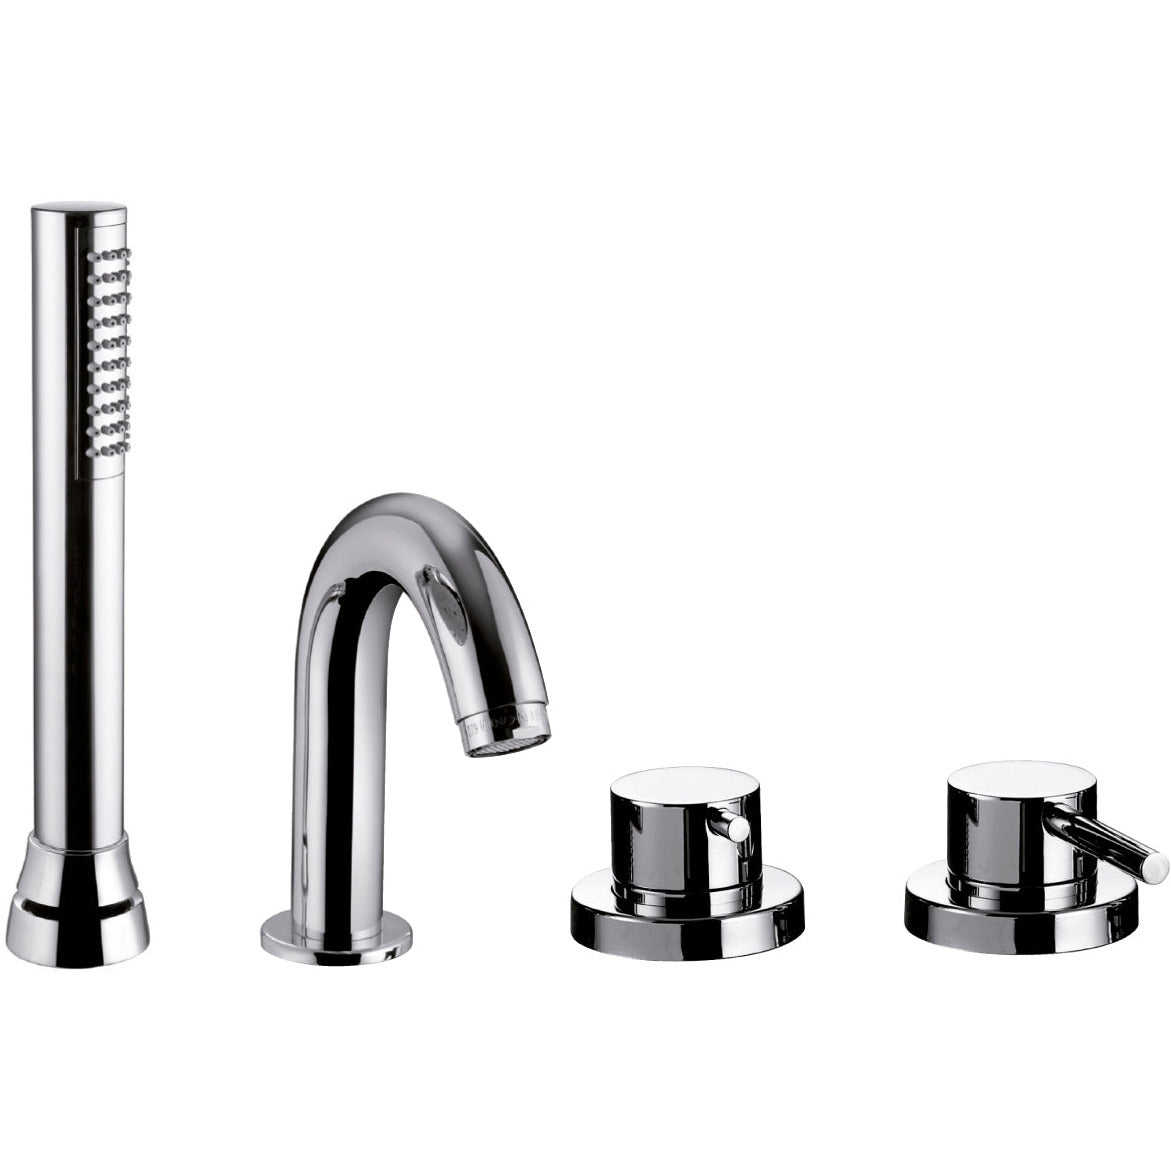 Bath faucet Digit/Mimo deck mount single lever 121089